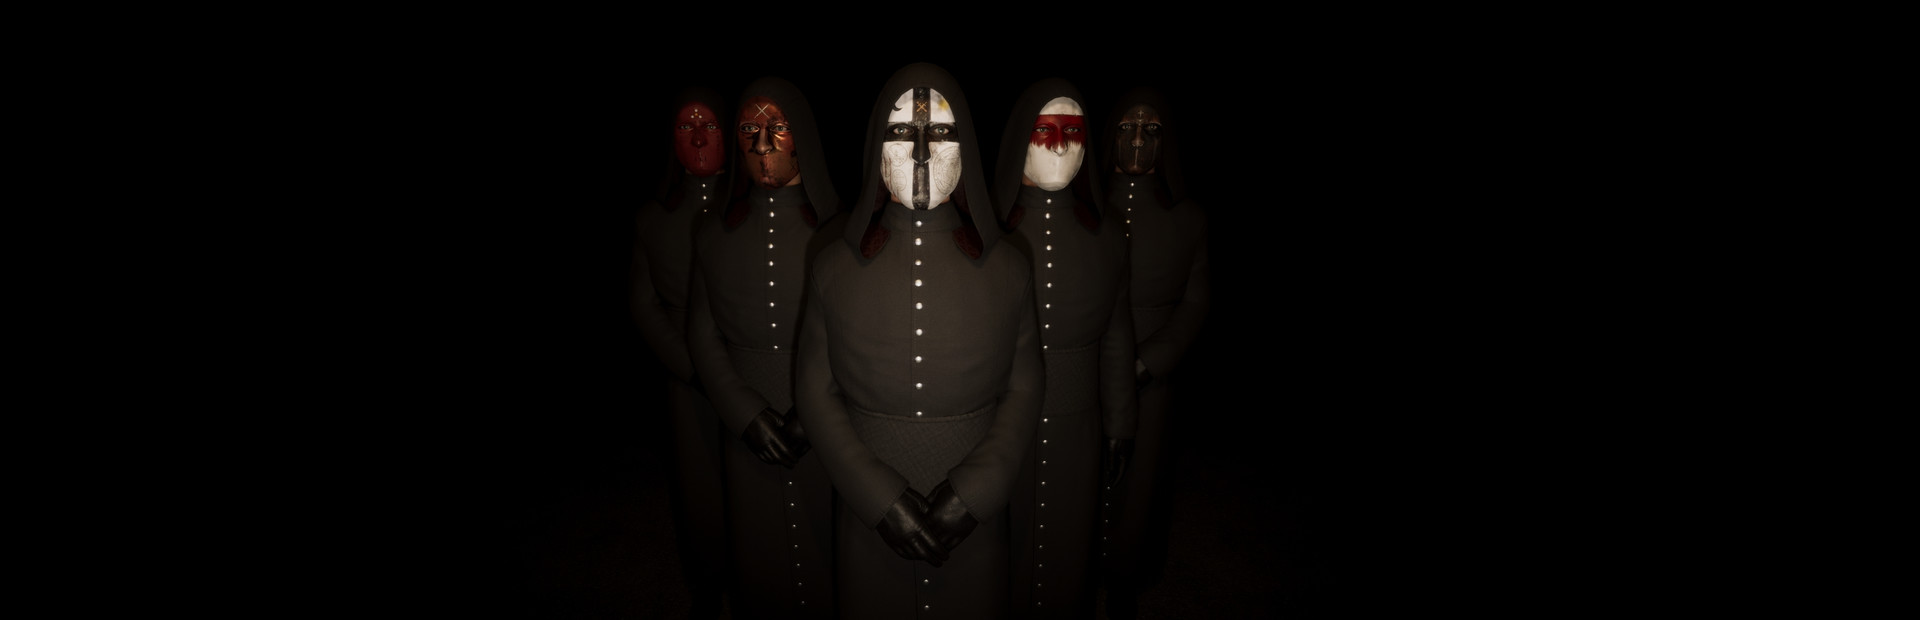 Masks Of Deception cover image